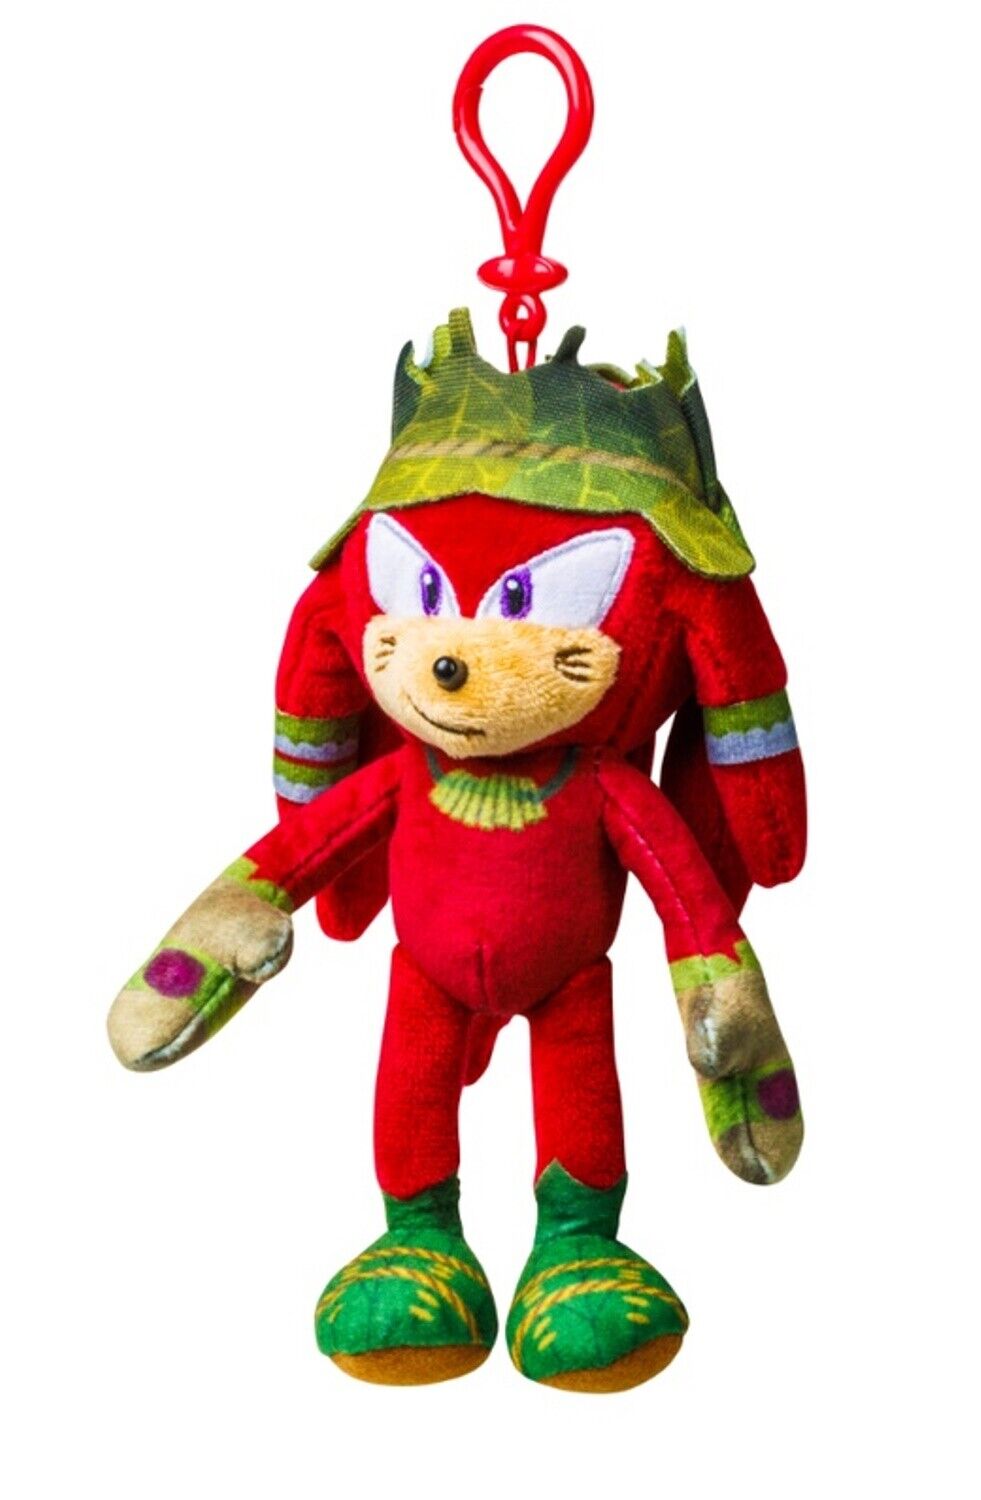 Sonic Prime Plush Keyring Toys